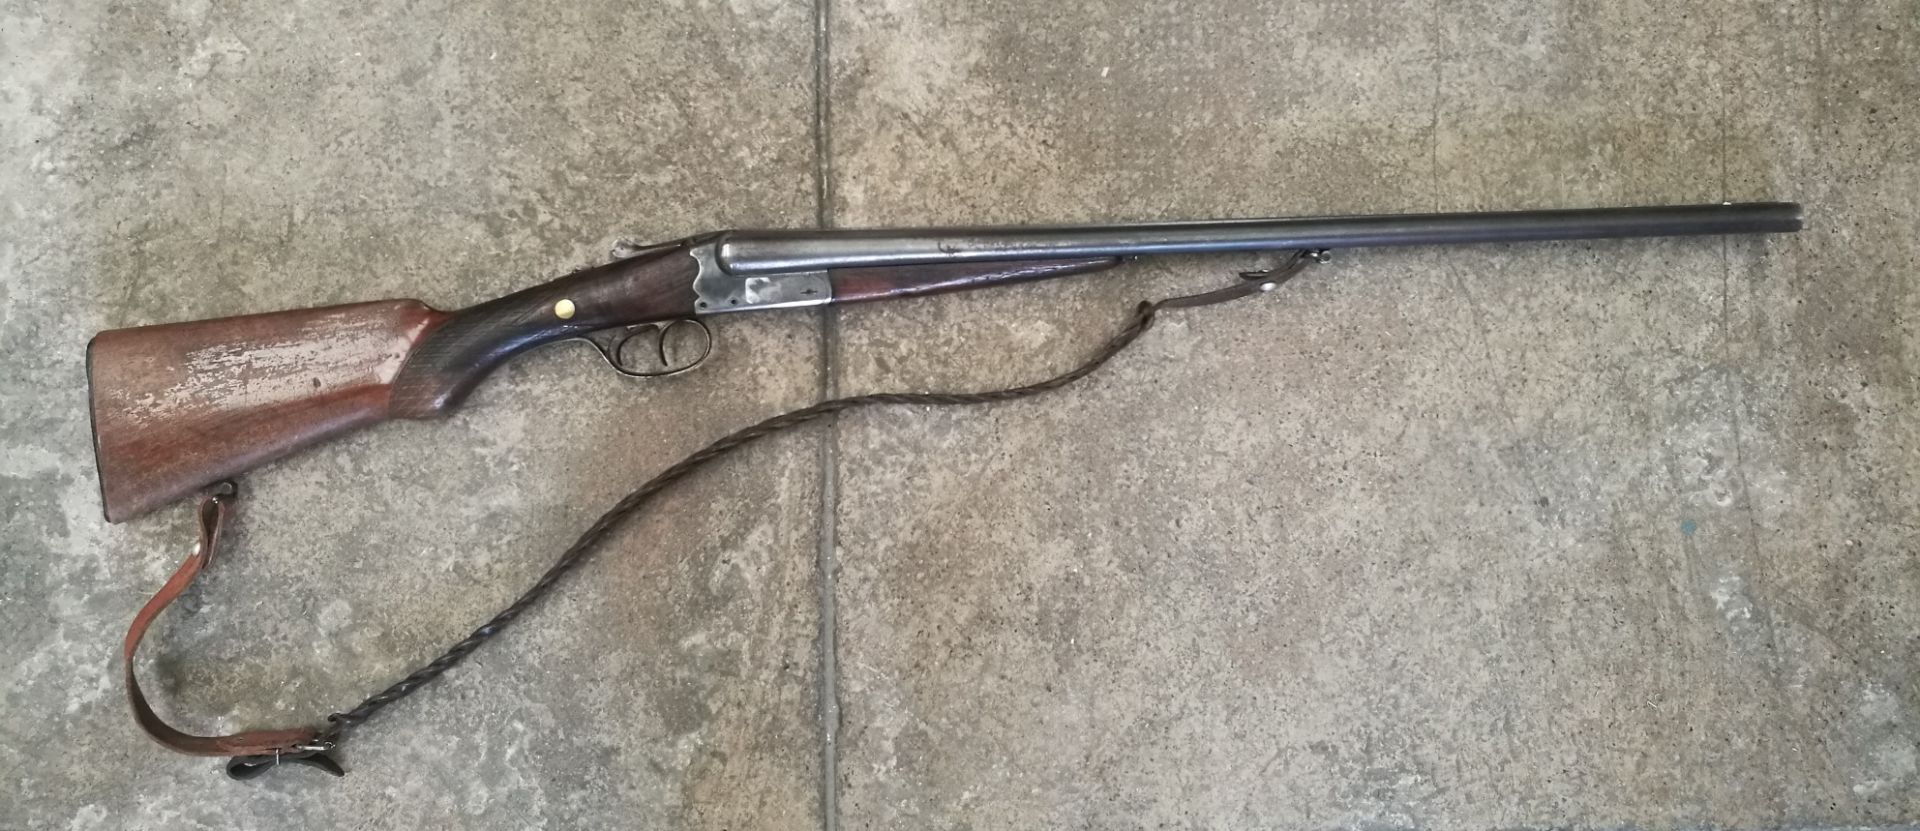 Fusil juxtaposé stéphanois de type anson, calibre 16/65, longueurs des canons 68cm, [...]